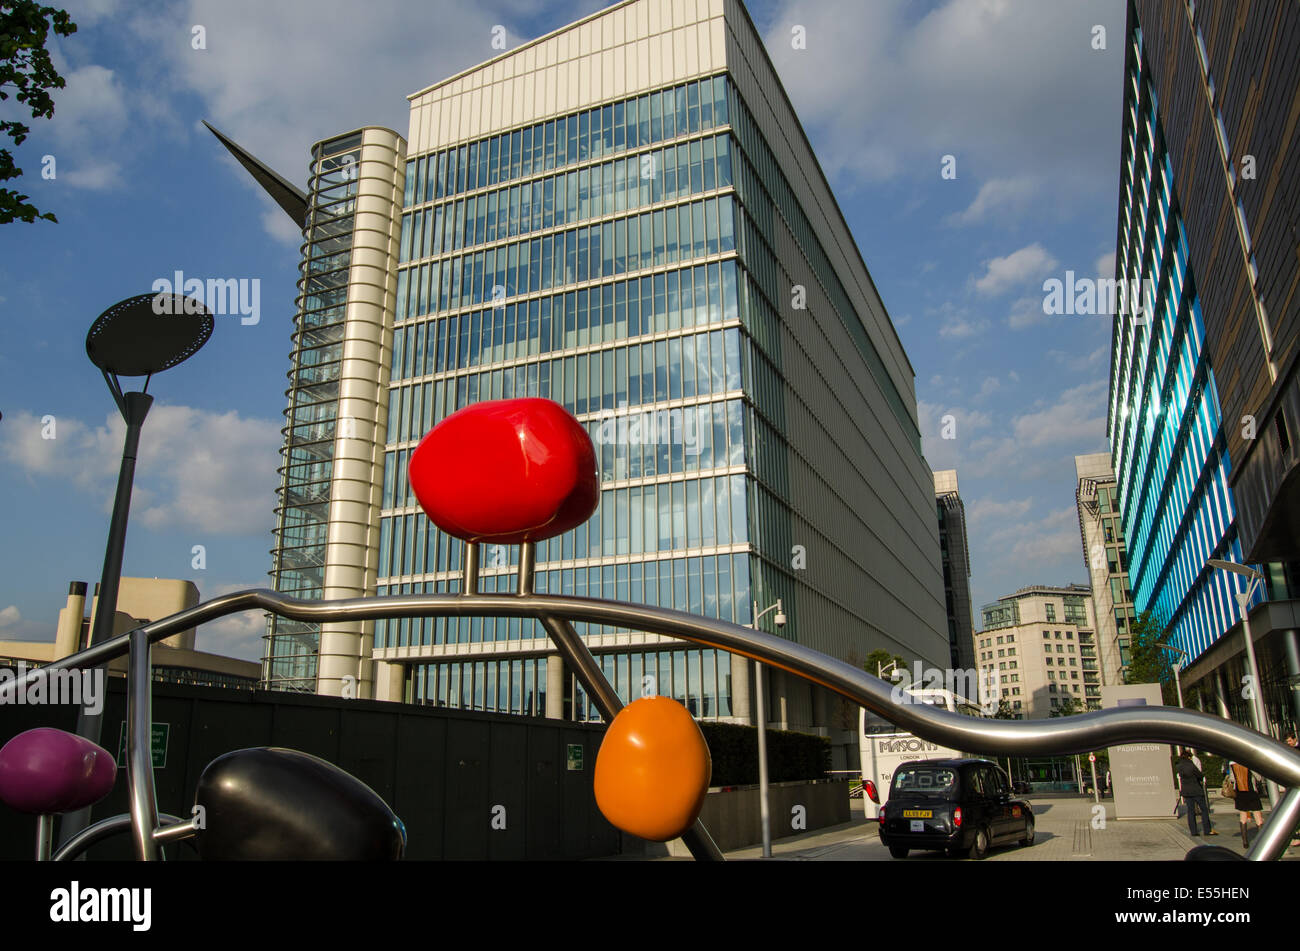 LONDON, ENGLAND  MAY 15, 2014: London Headquarters of the pharmaceutical company AstraZeneca in Paddington. Stock Photo